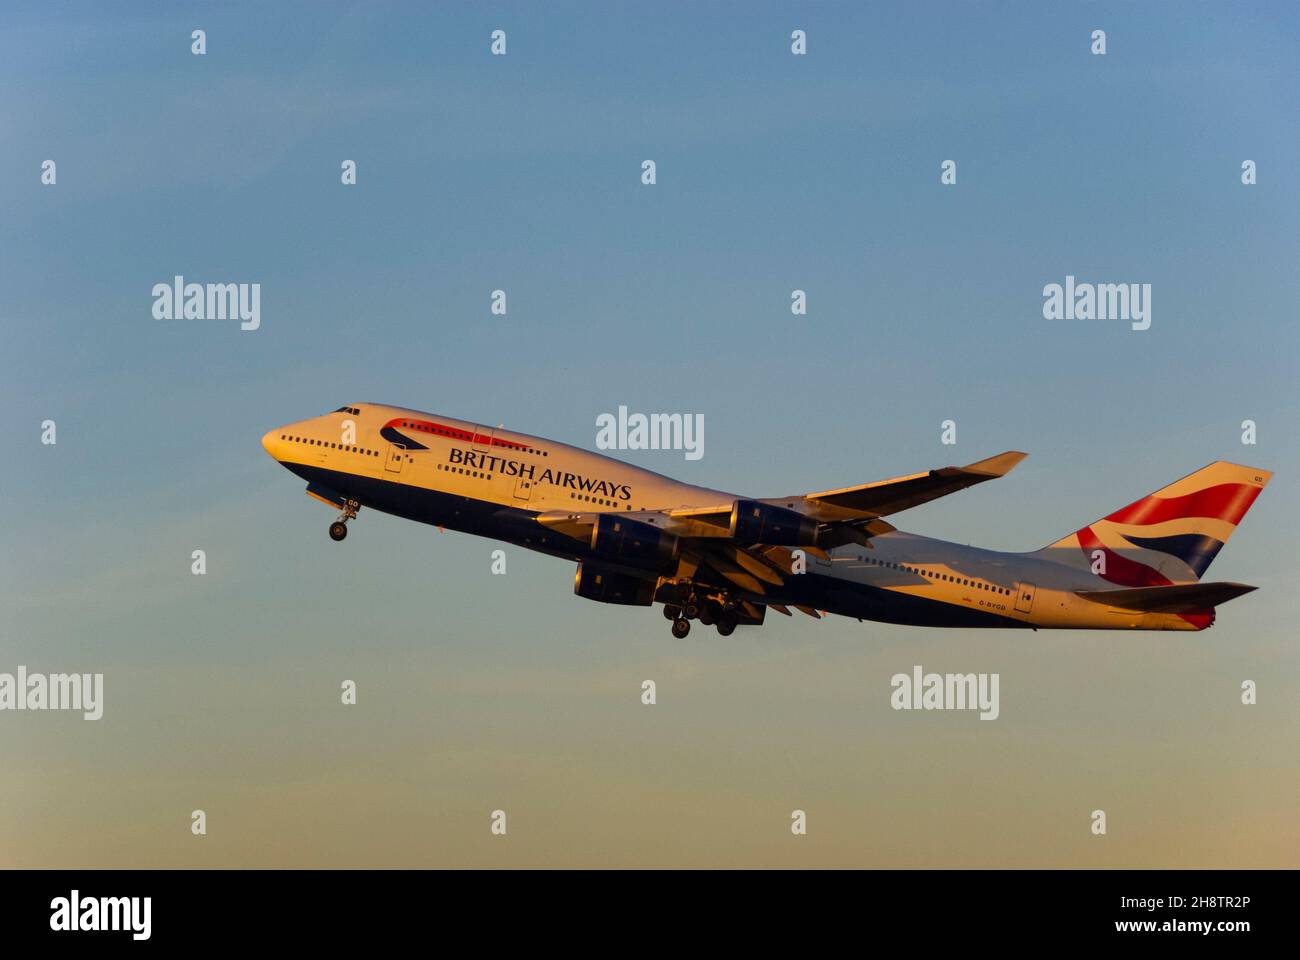 British Airways Boeing 747 Jumbo Jet aereo jet climbing dopo il decollo dall'aeroporto di Londra Heathrow, Regno Unito, al crepuscolo con caldo bagliore dal tramonto Foto Stock